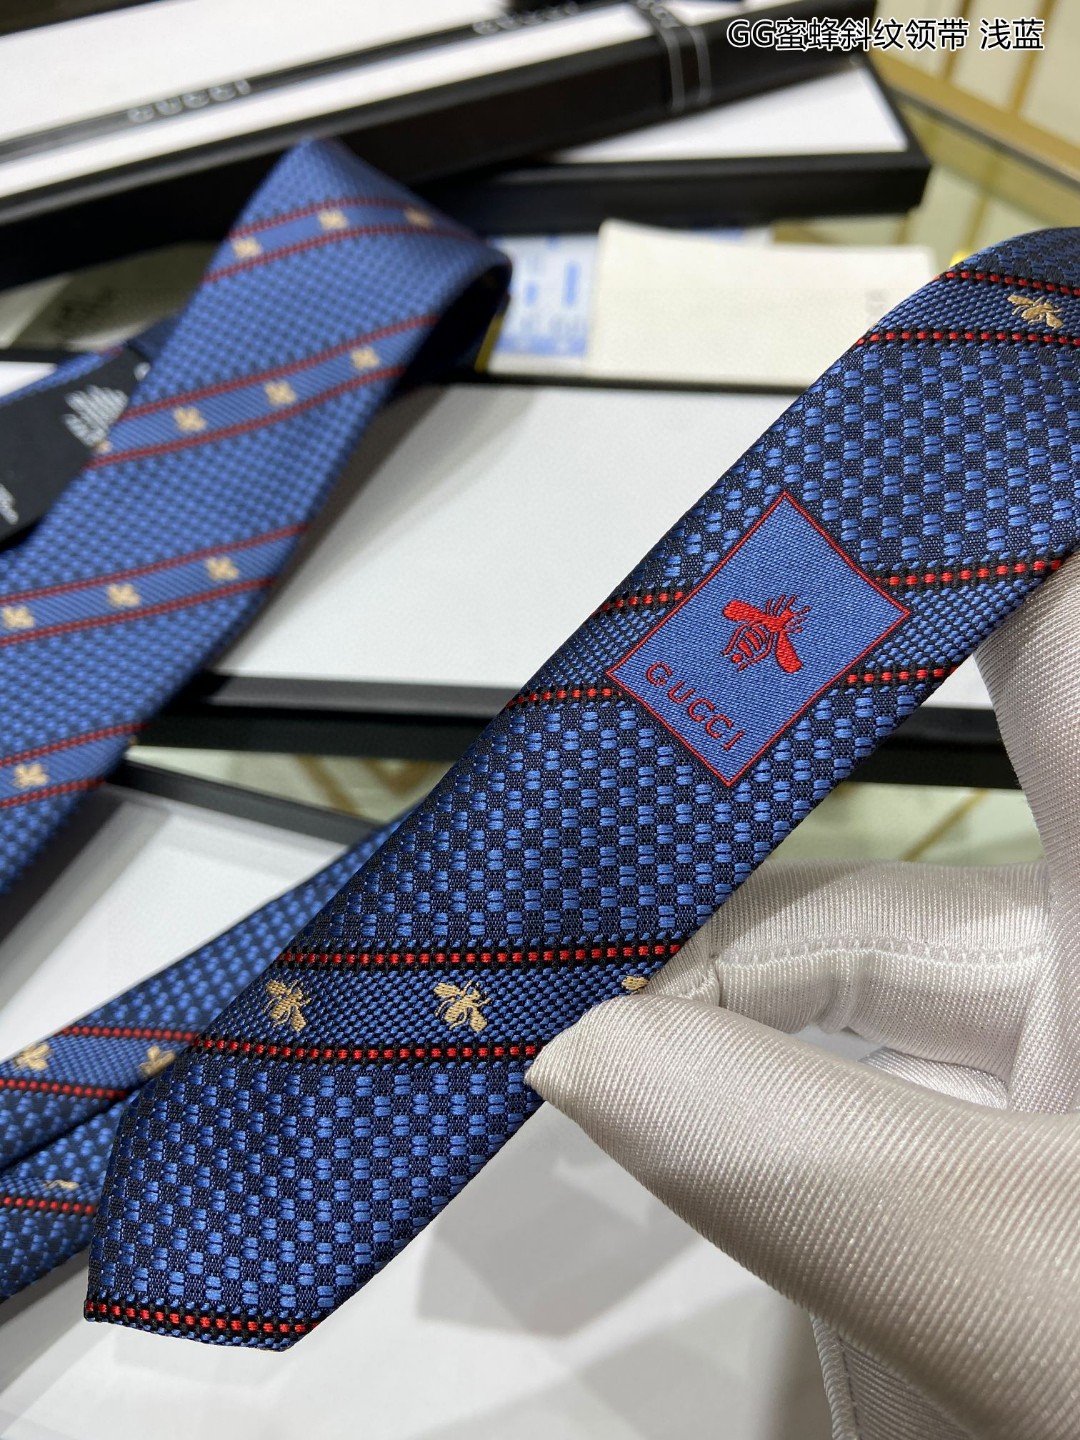 上新特价G家男士领带系列GG蜜蜂斜纹领带稀有展现精湛手工与时尚优雅的理想选择这款领带将标志性的主题动物小